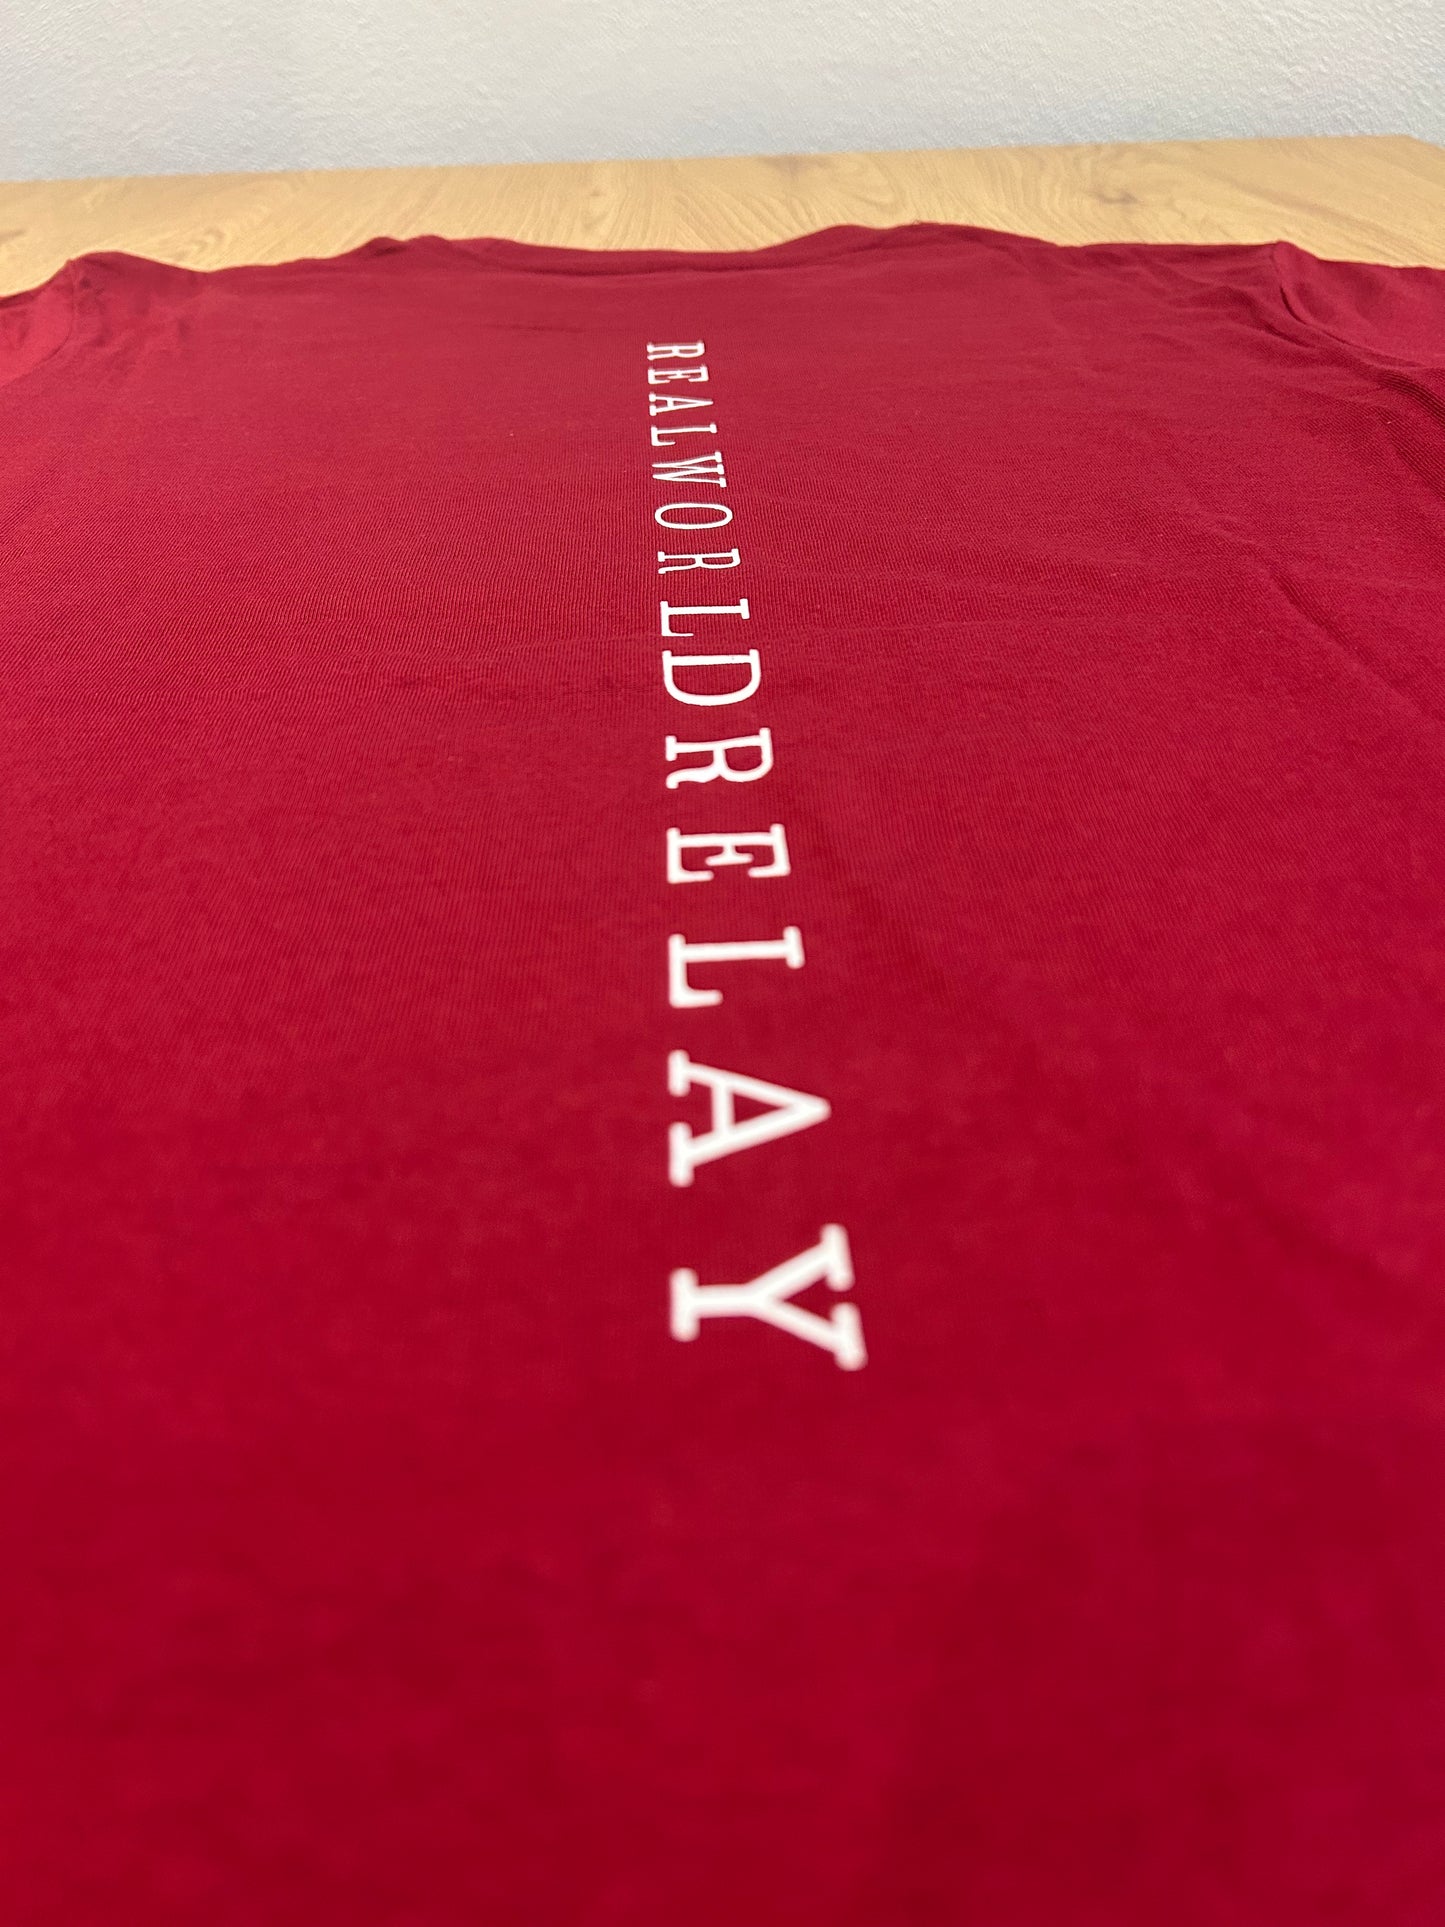 Bordeaux - T-Shirt Edition 1